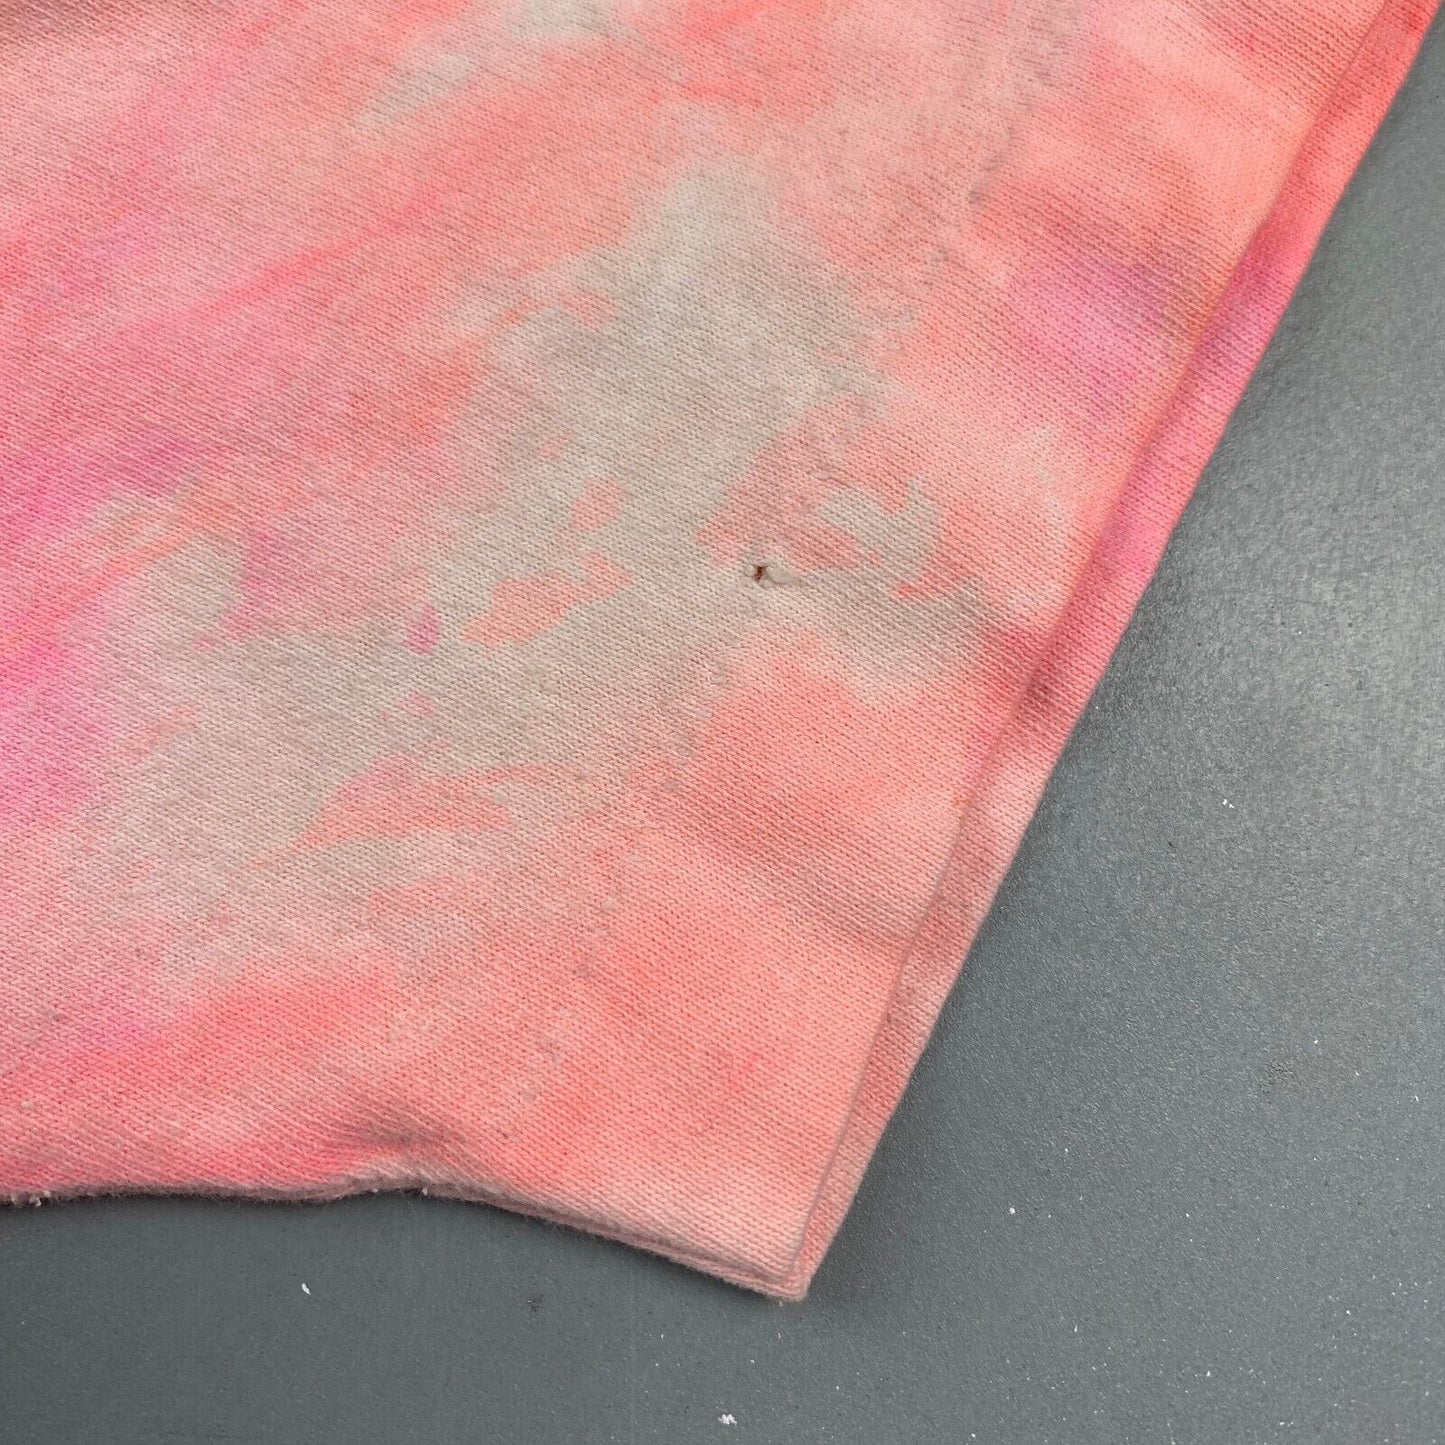 VINTAGE 90s Pink Peach Marble Tye Dye Blank T-Shirt sz X-Large Men